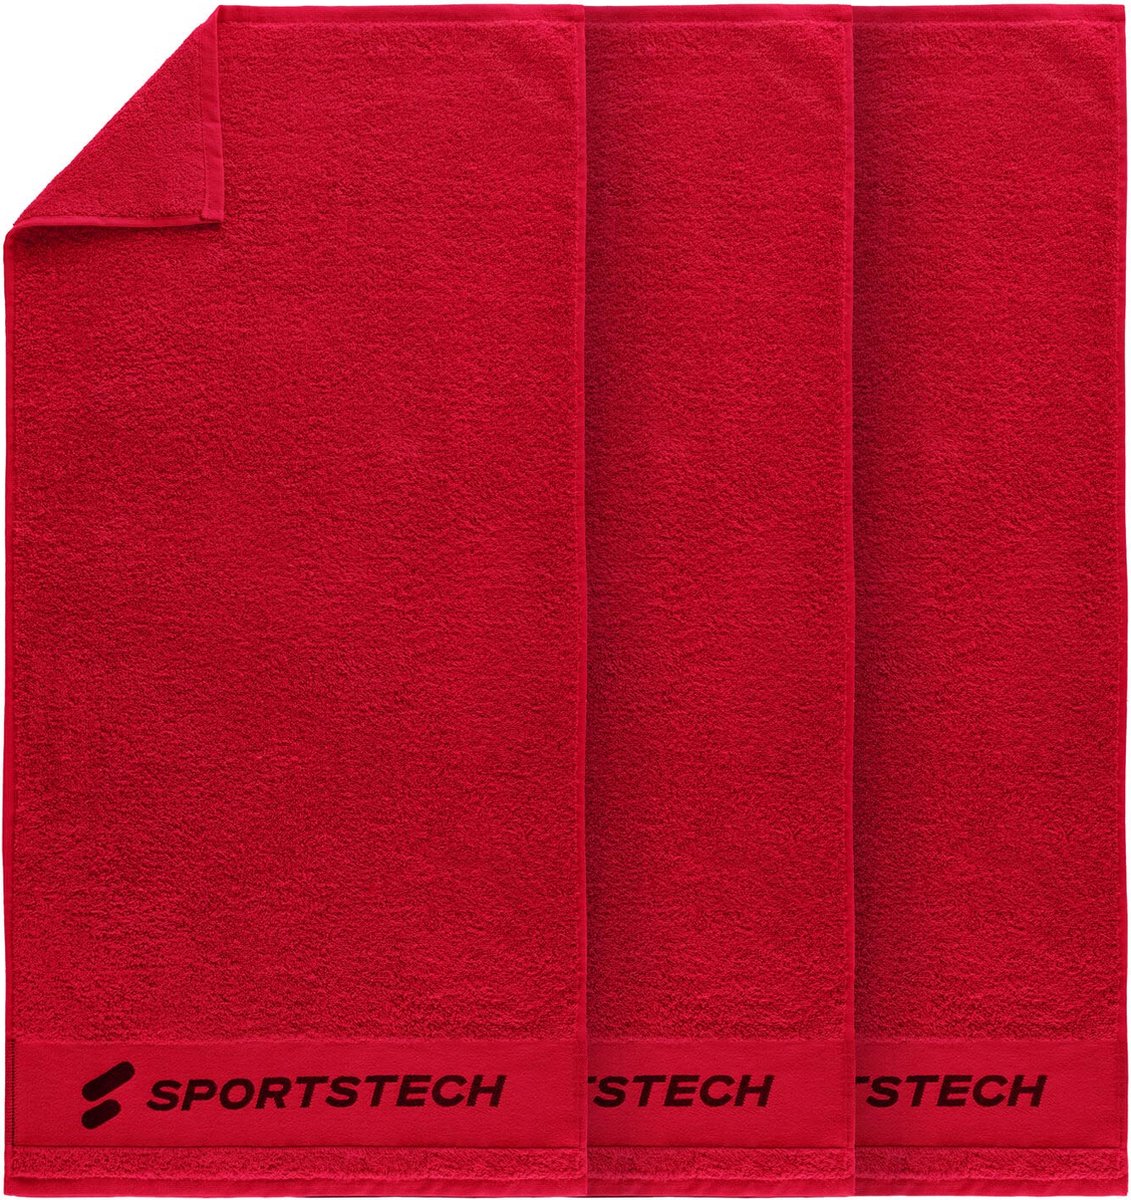 Sportstech handdoek TWL50 | set van 3 | hoge kwaliteit handdoek voor fitness in de sportschool of thuis | 100% katoen | 100 x 50 cm accessoire | enkel of als set | stijlvol design